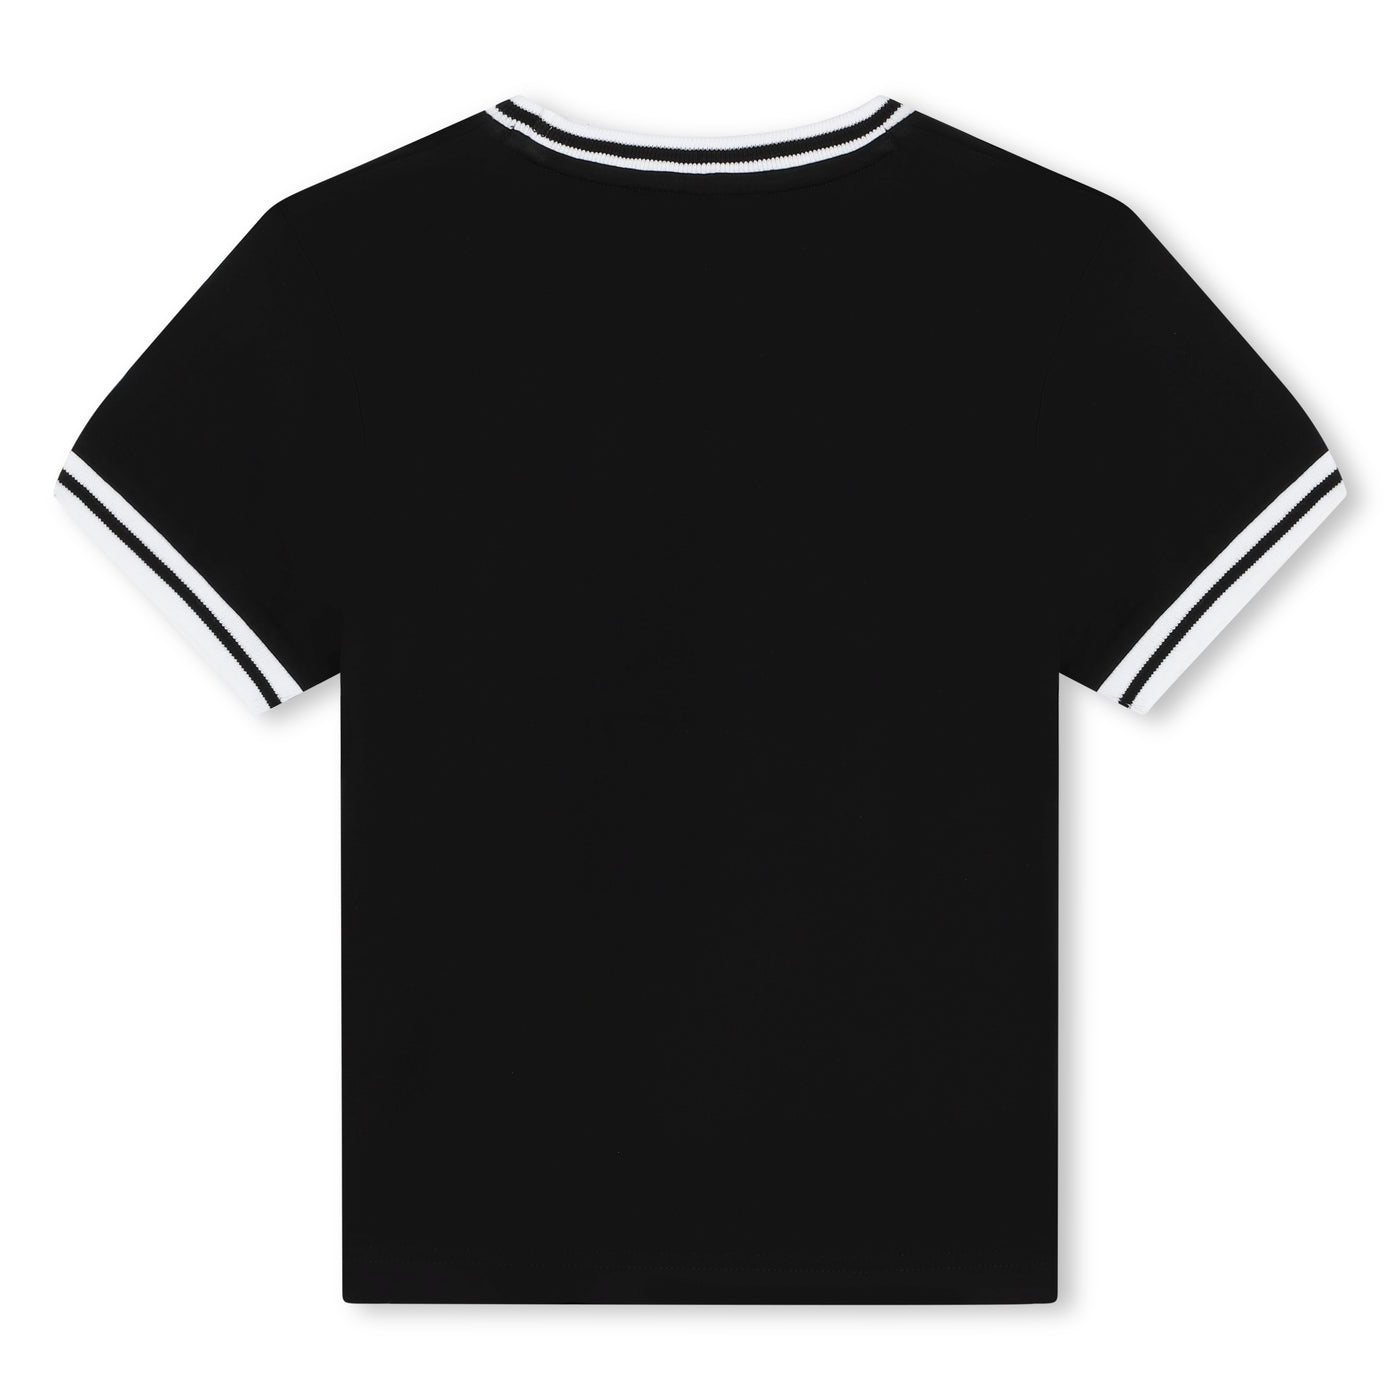 Black T-shirt by DKNY